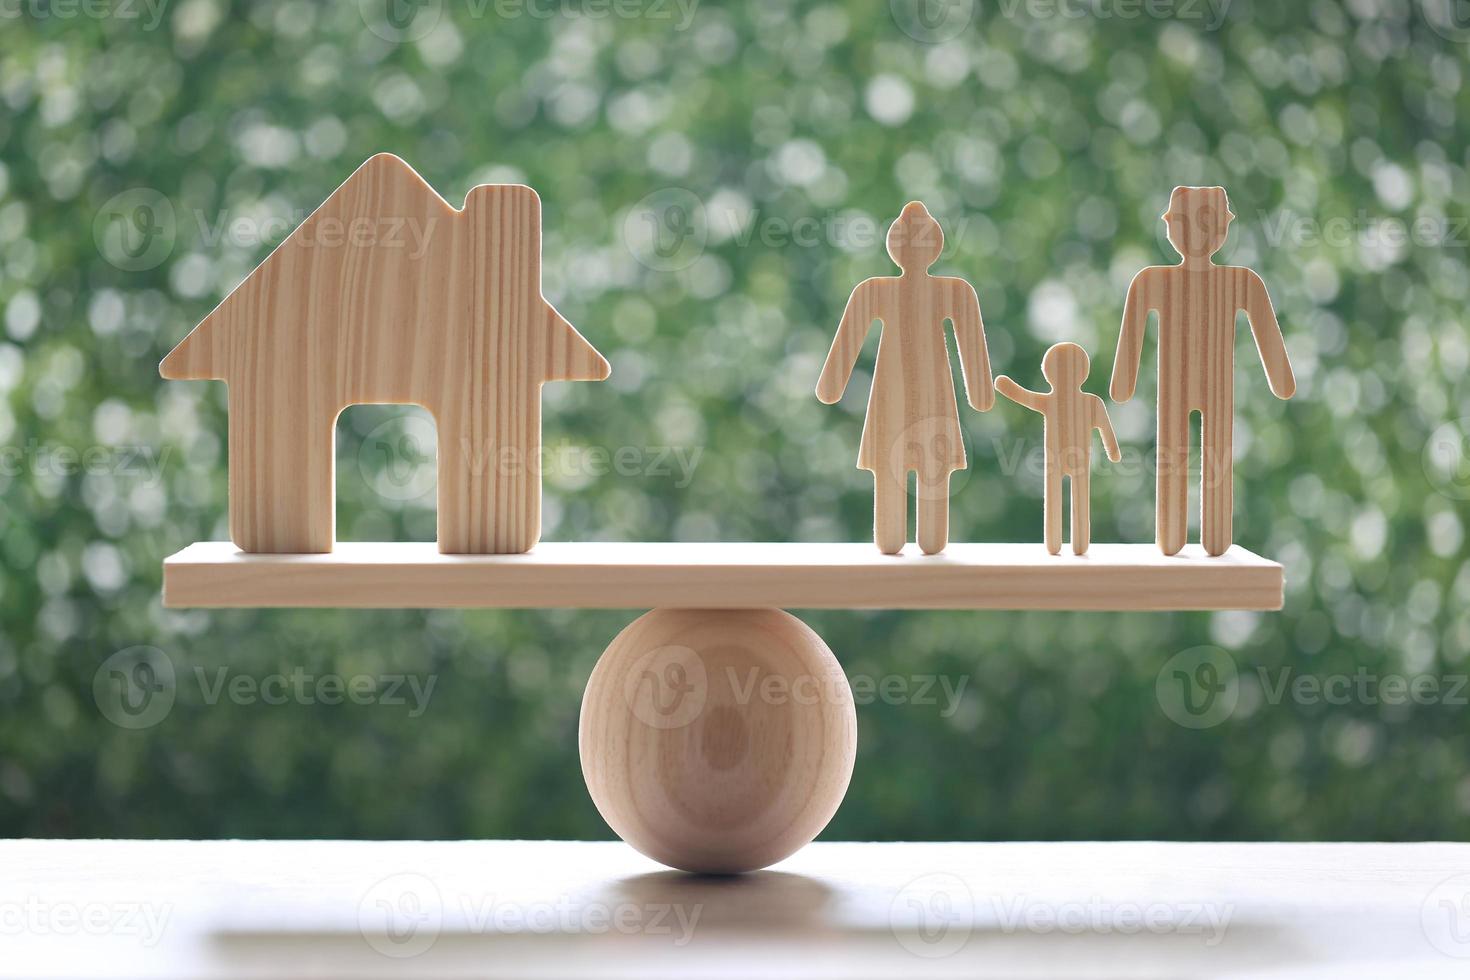 modellhus och modellfamilj på träskalvippa med naturlig grön bakgrund foto